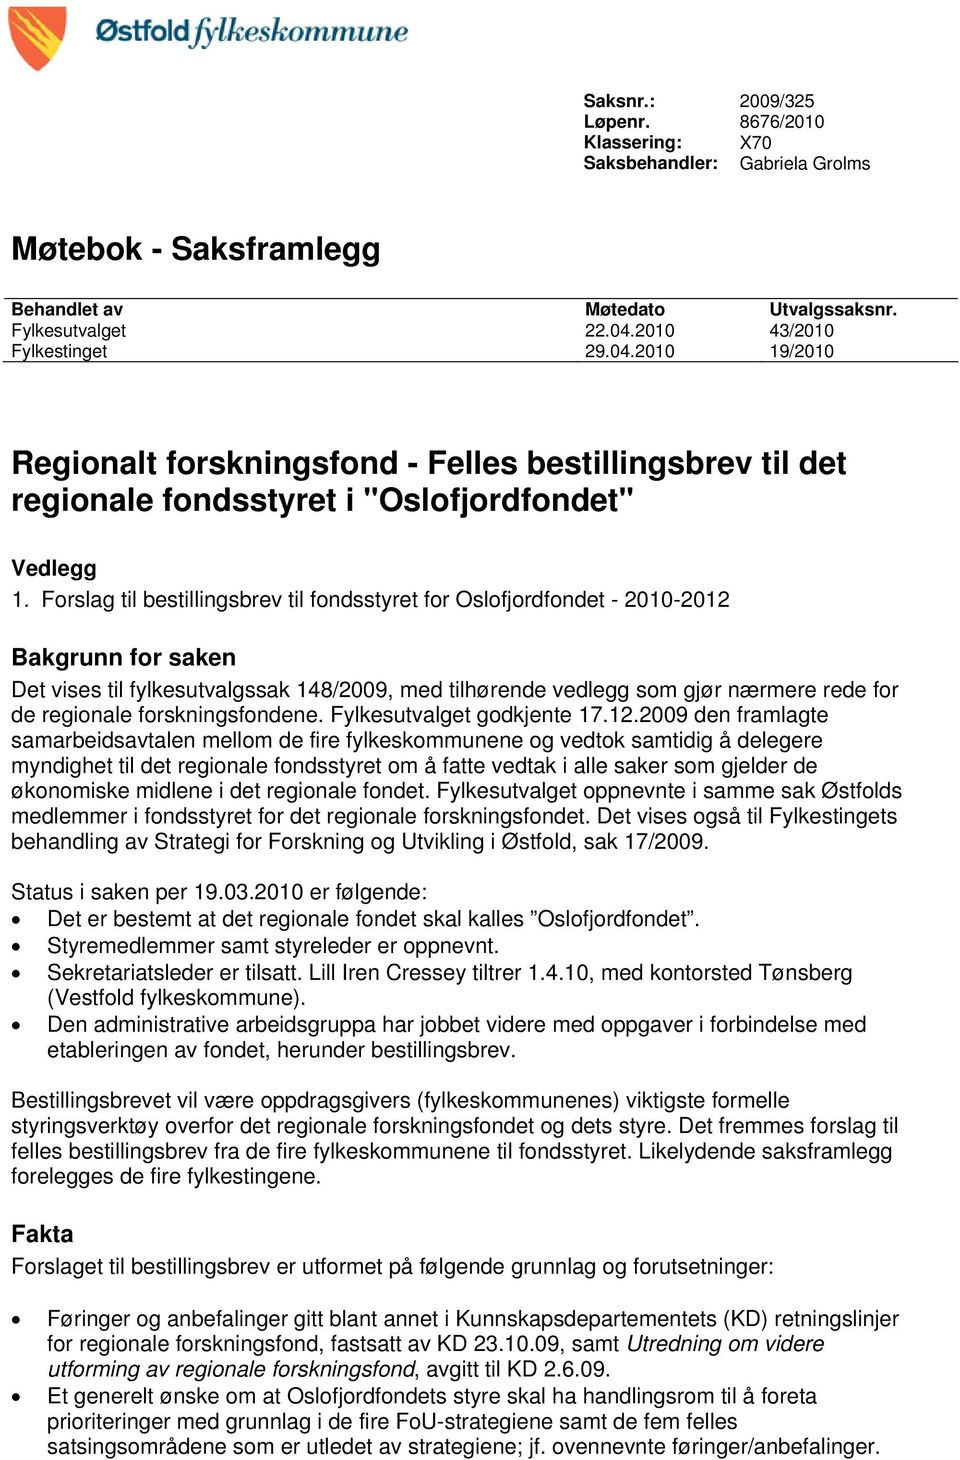 Forslag til bestillingsbrev til fondsstyret for Oslofjordfondet - 2010-2012 Bakgrunn for saken Det vises til fylkesutvalgssak 148/2009, med tilhørende vedlegg som gjør nærmere rede for de regionale